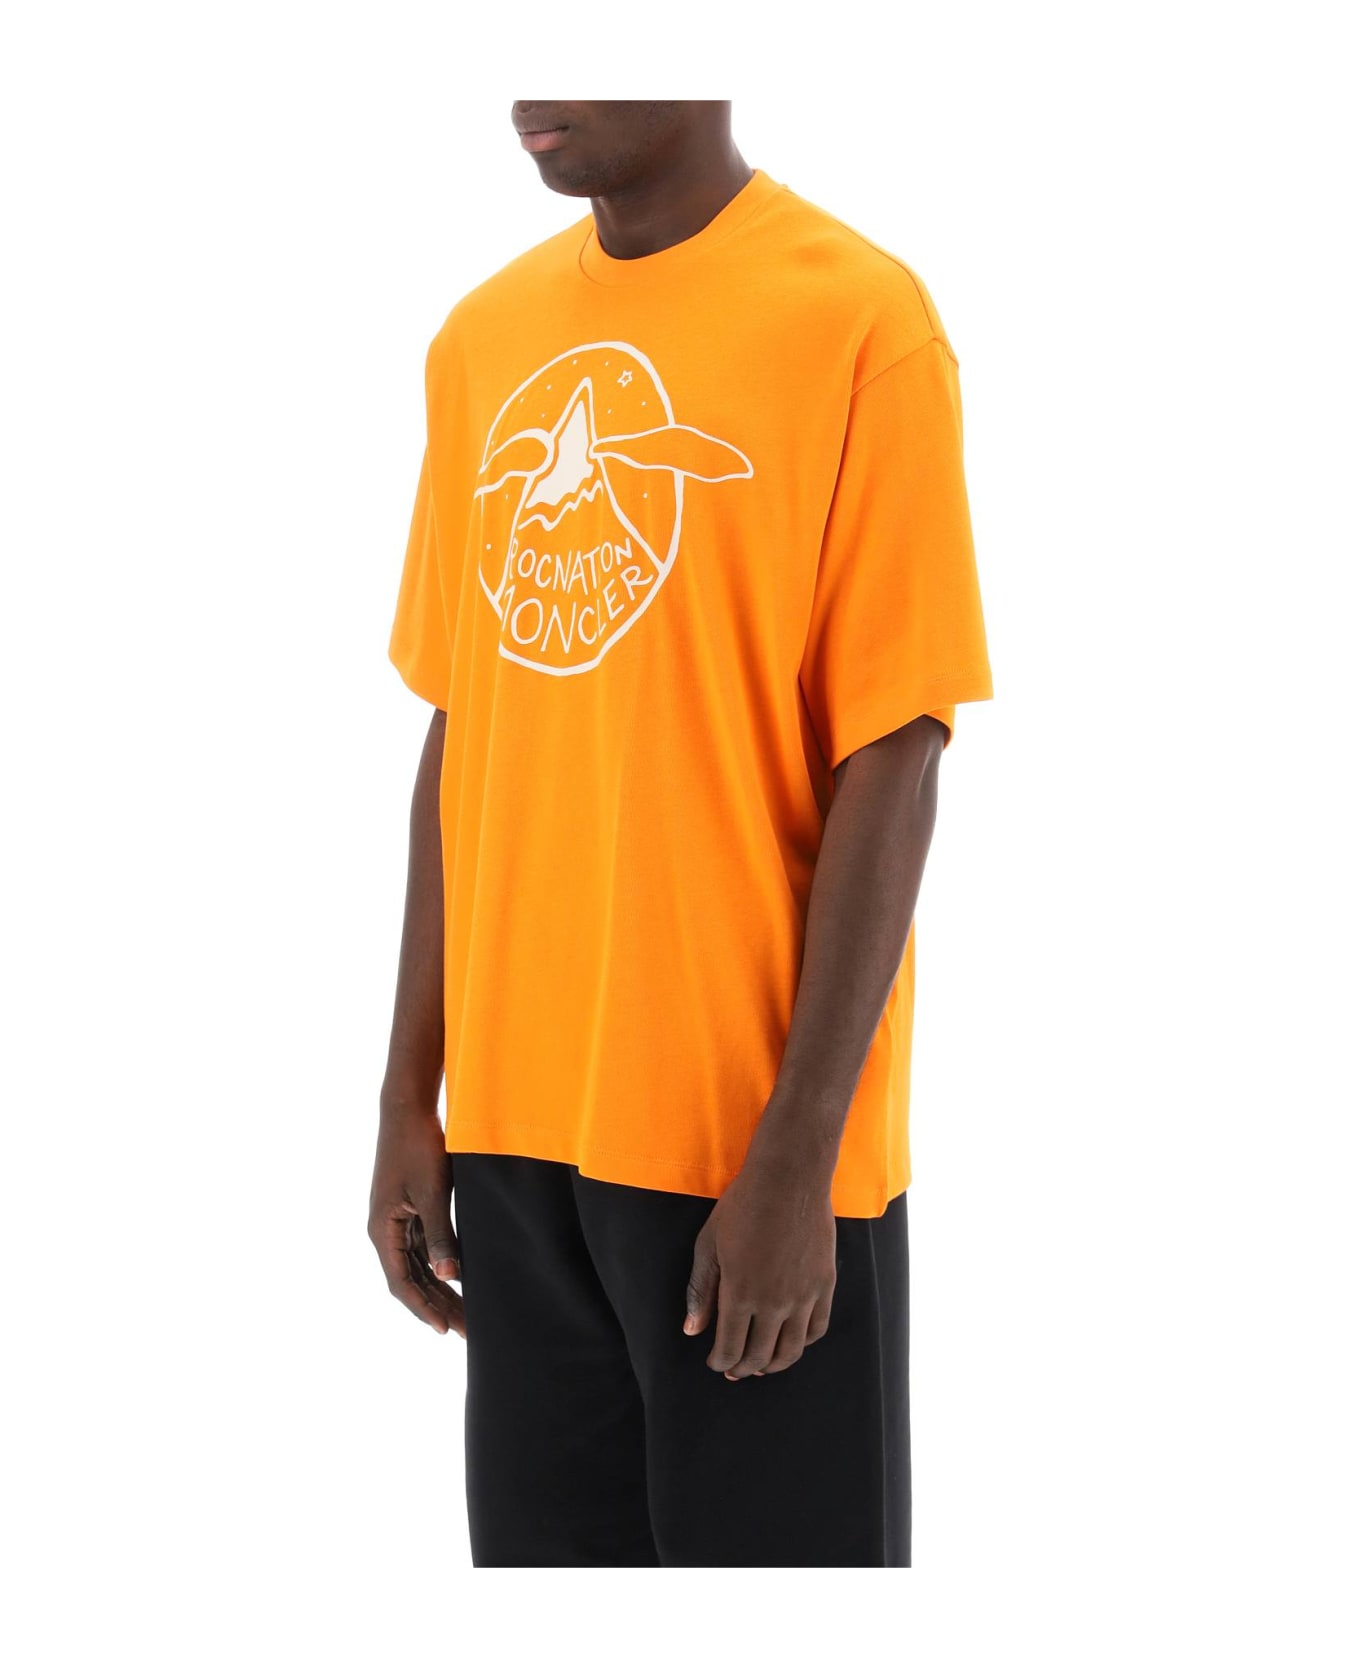 Moncler Genius Logo T-shirt - Yellow & Orange シャツ